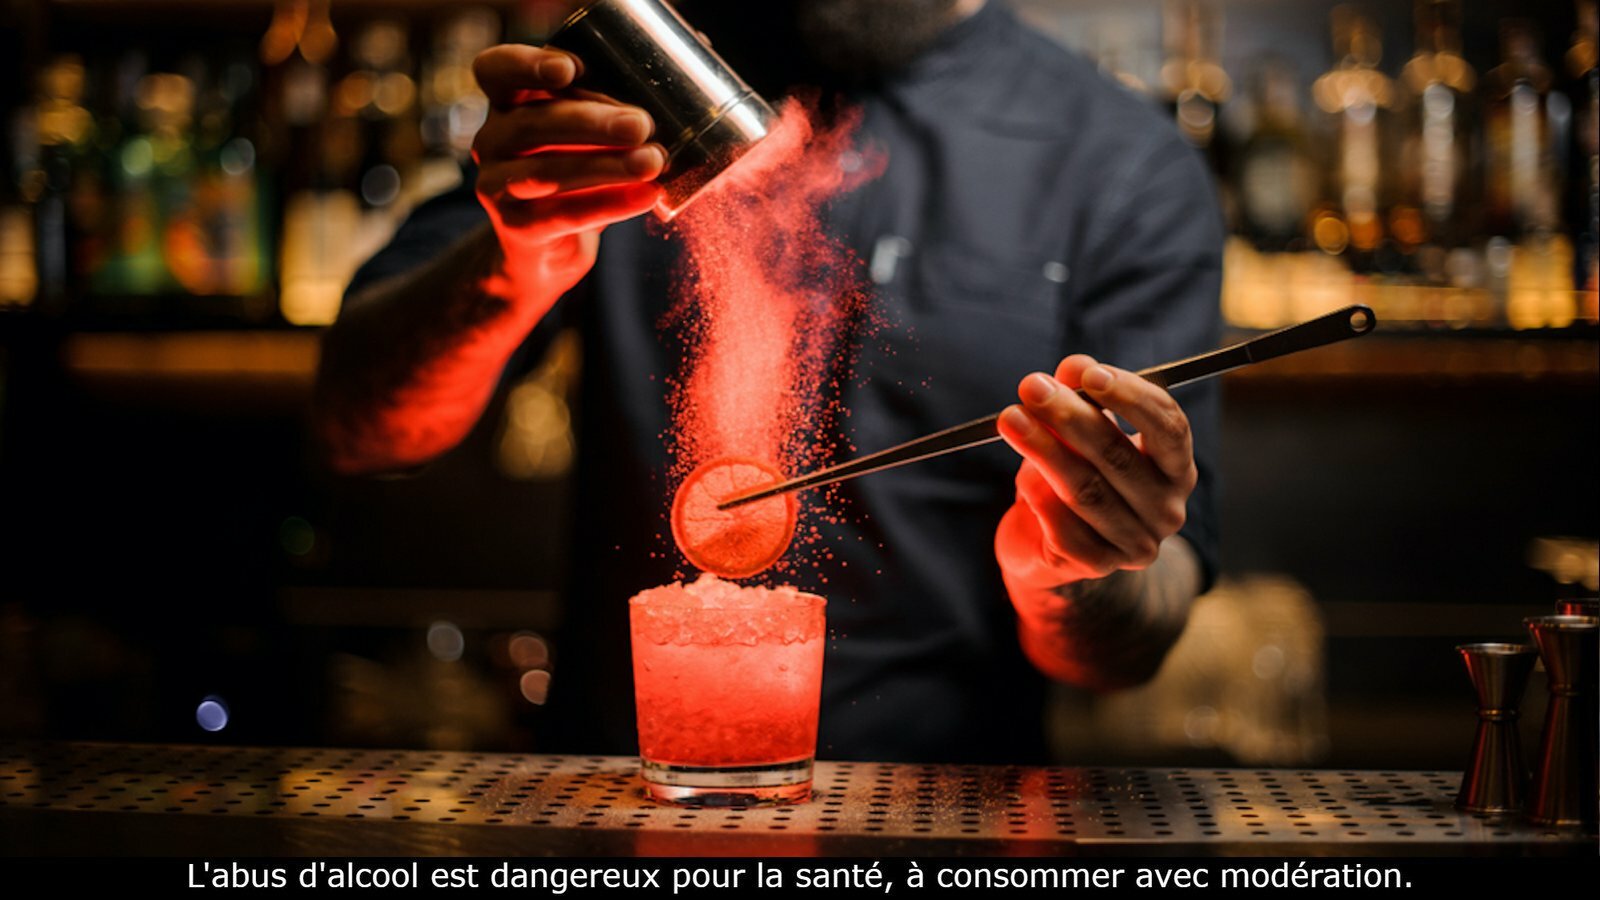 Opticien Marseille lunettes d'apéro de luxe montures cocktails